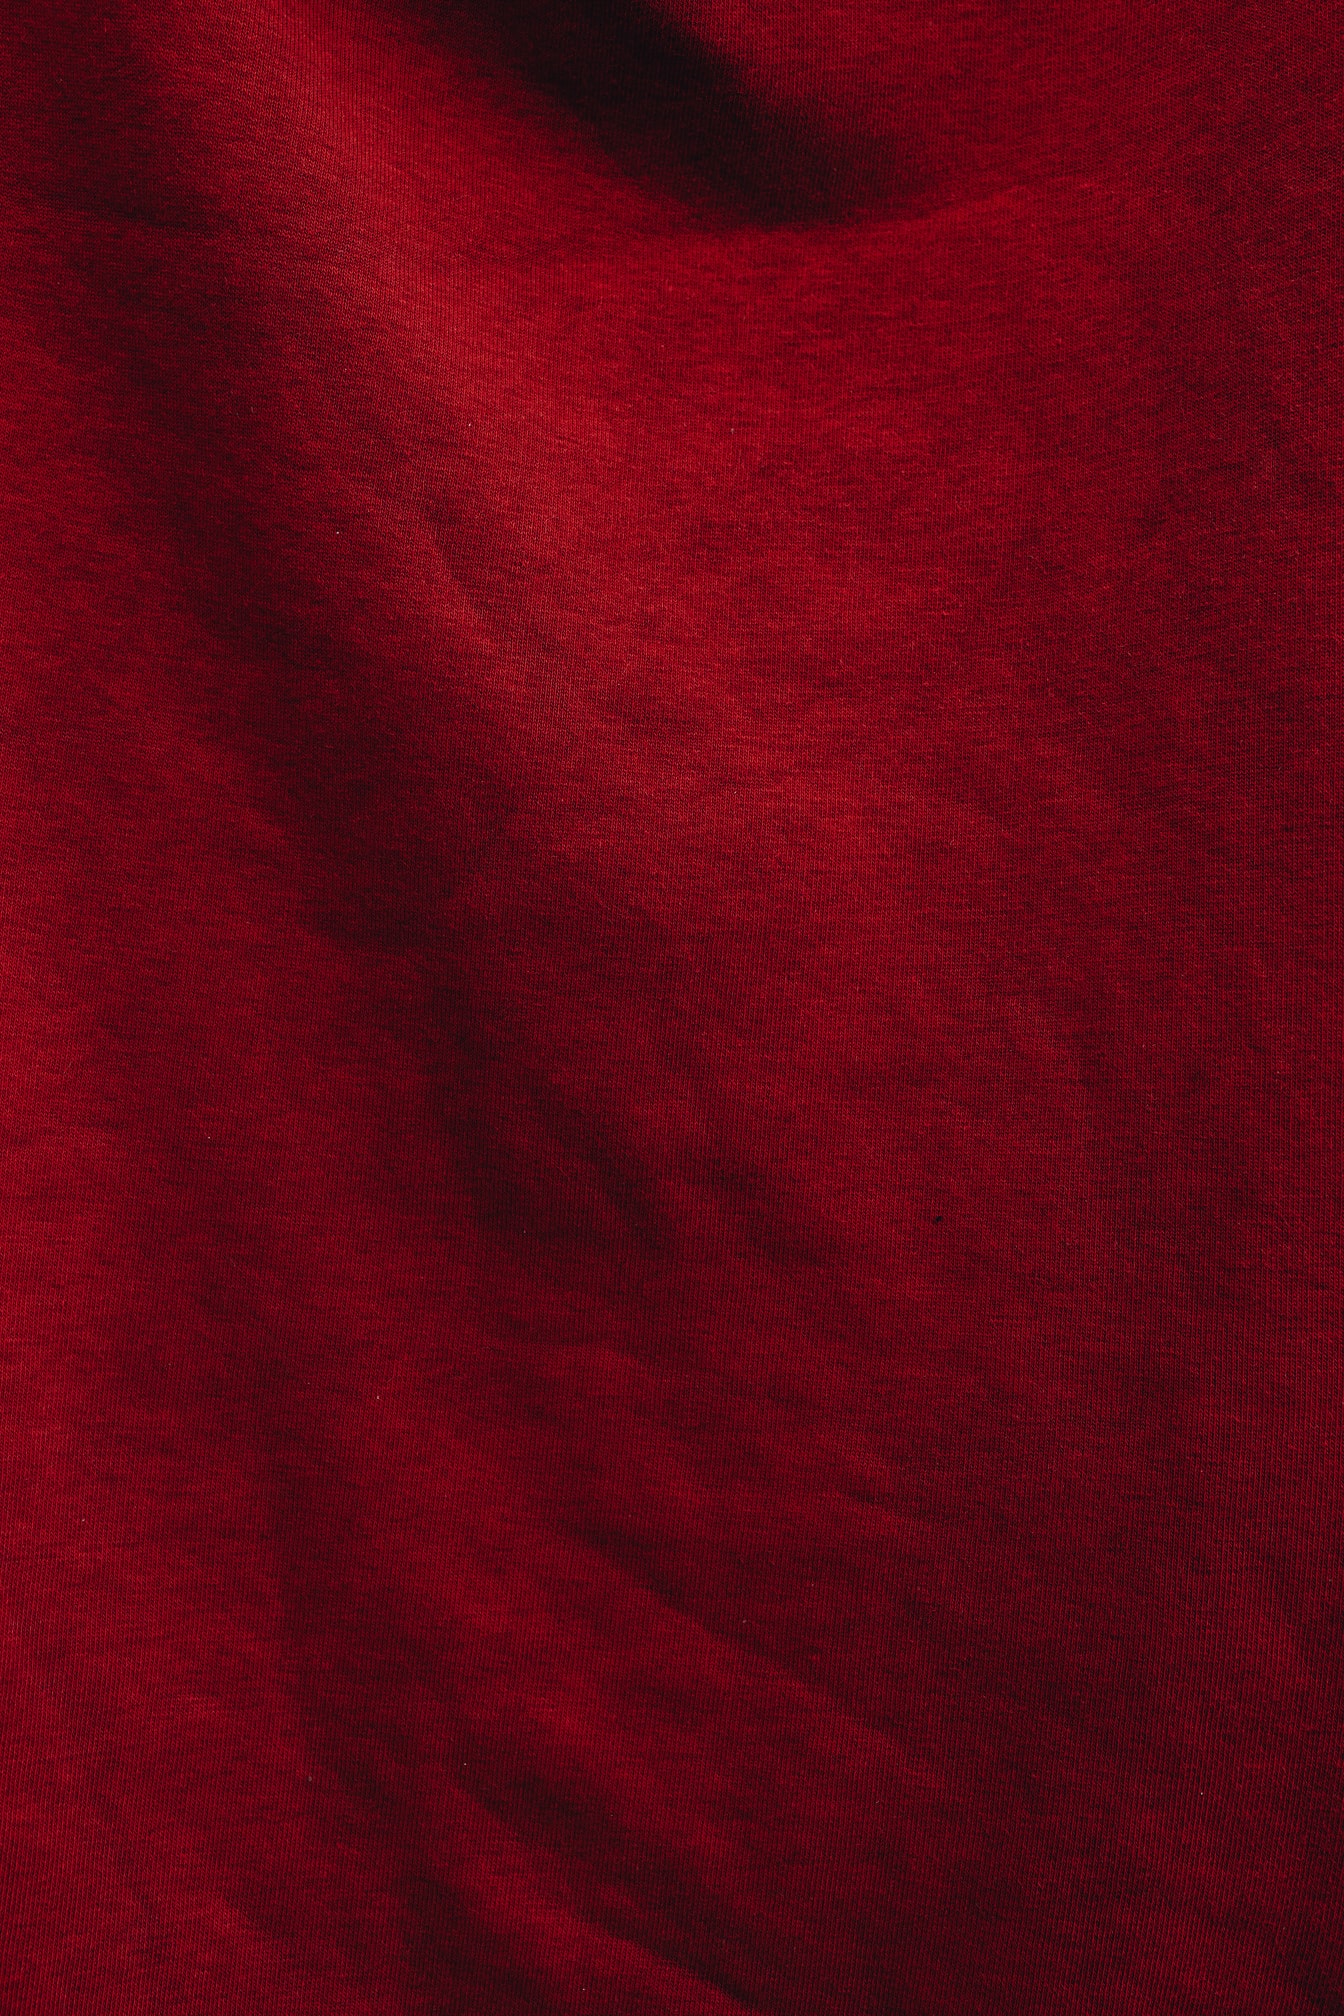 Tessuto in cotone rosso scuro con texture ombreggiata